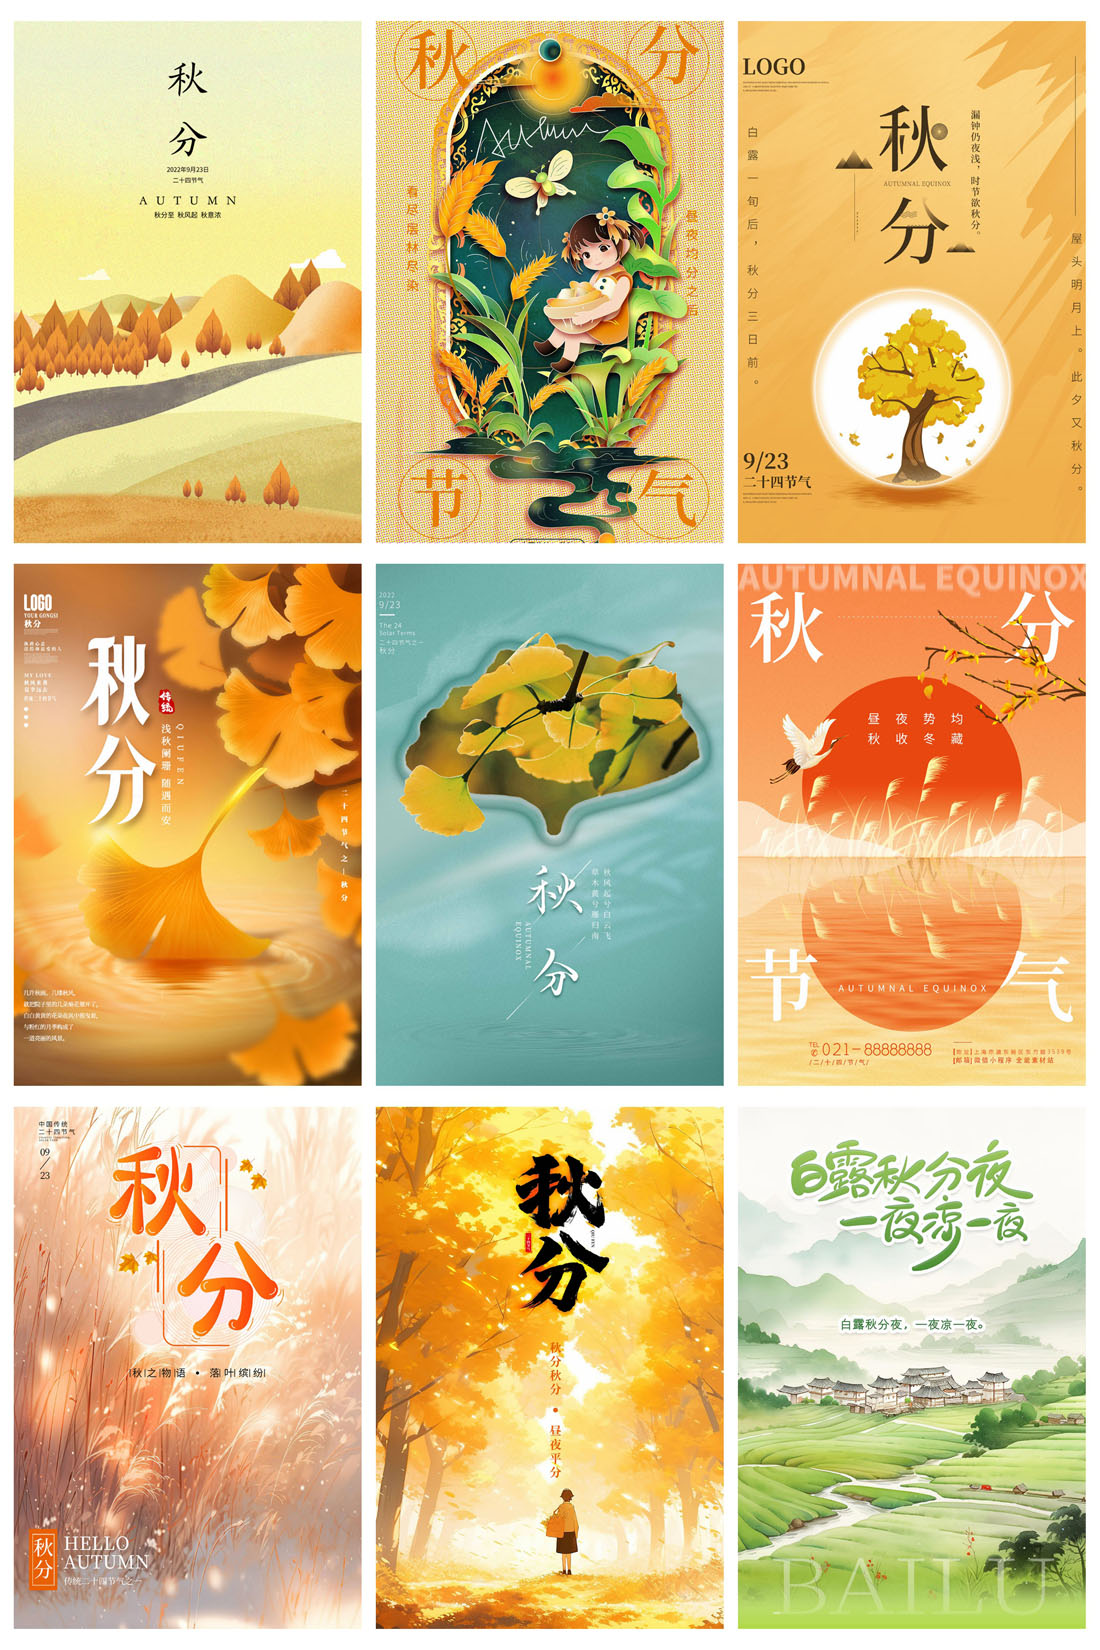 52款中国传统节日二十四节气秋分节日宣传海报PSD模板 设计素材 第7张